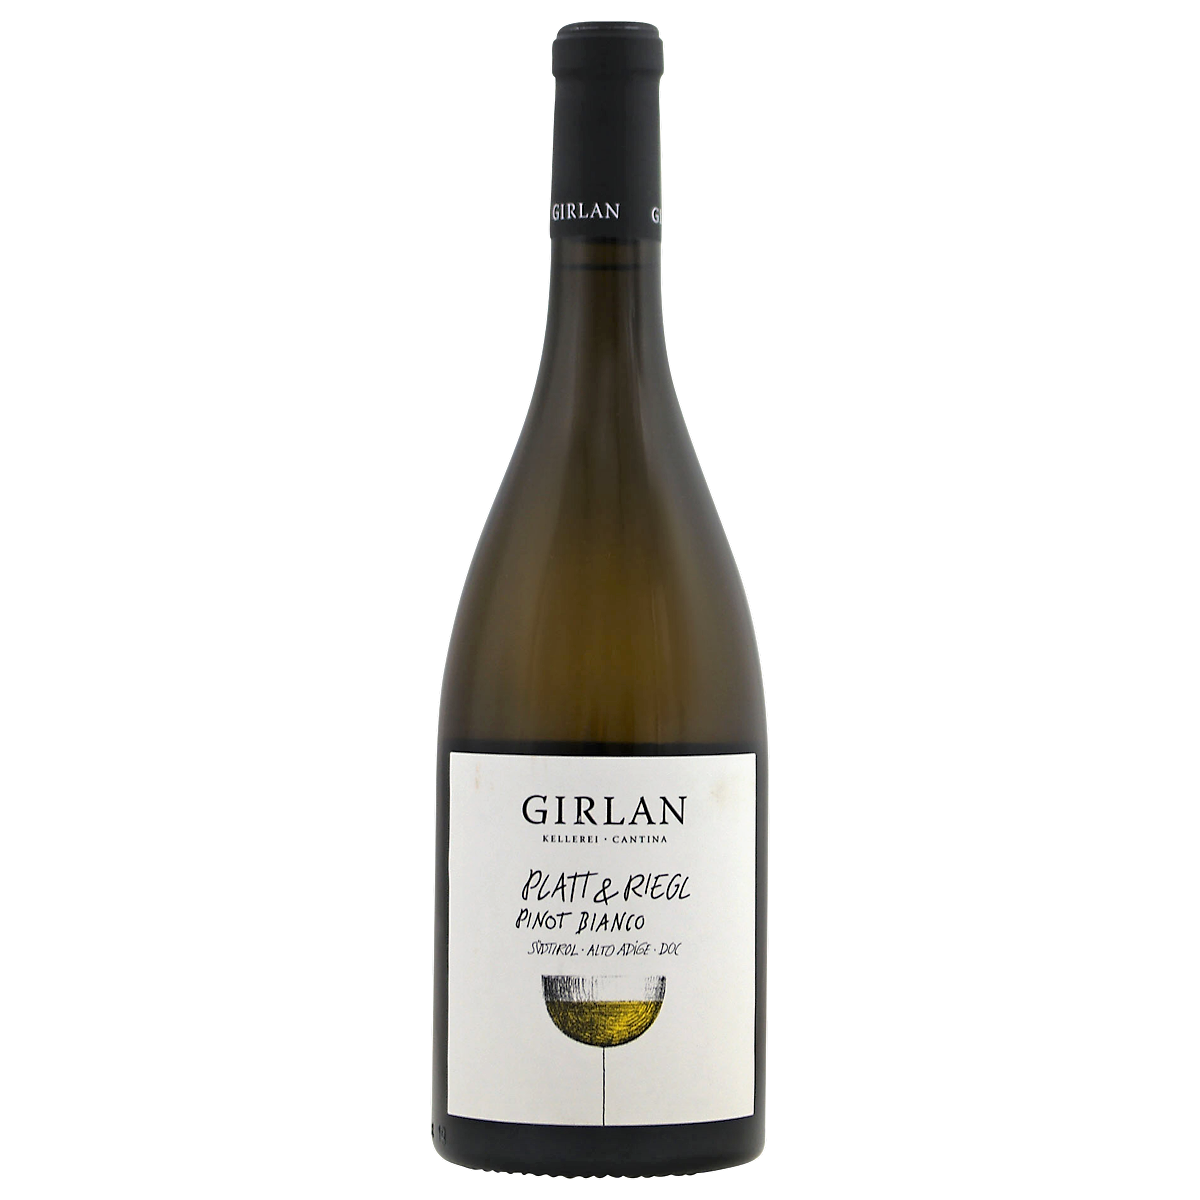 Girlan - "Platt & Riegl" Pinot Bianco